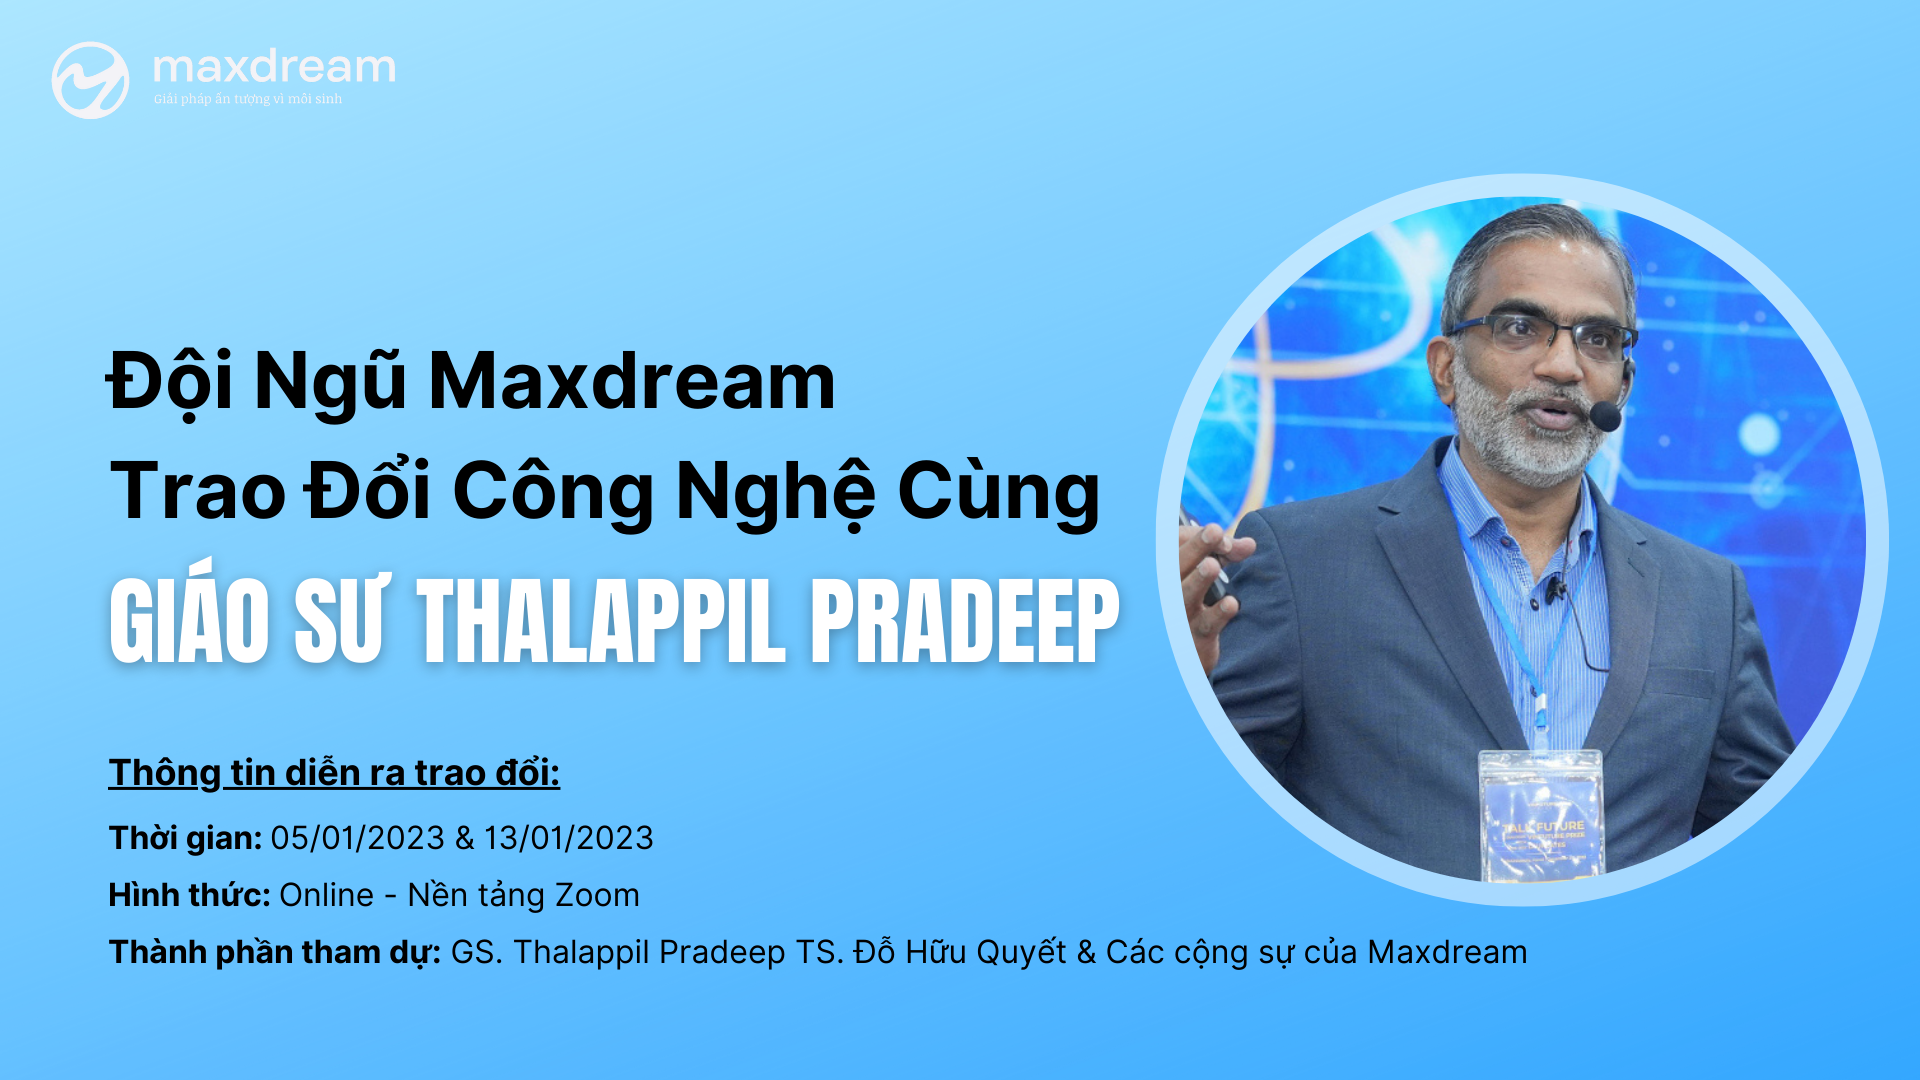 Đội ngũ Maxdream trao đổi công nghệ cùng Giáo sư Thalappil Pradeep